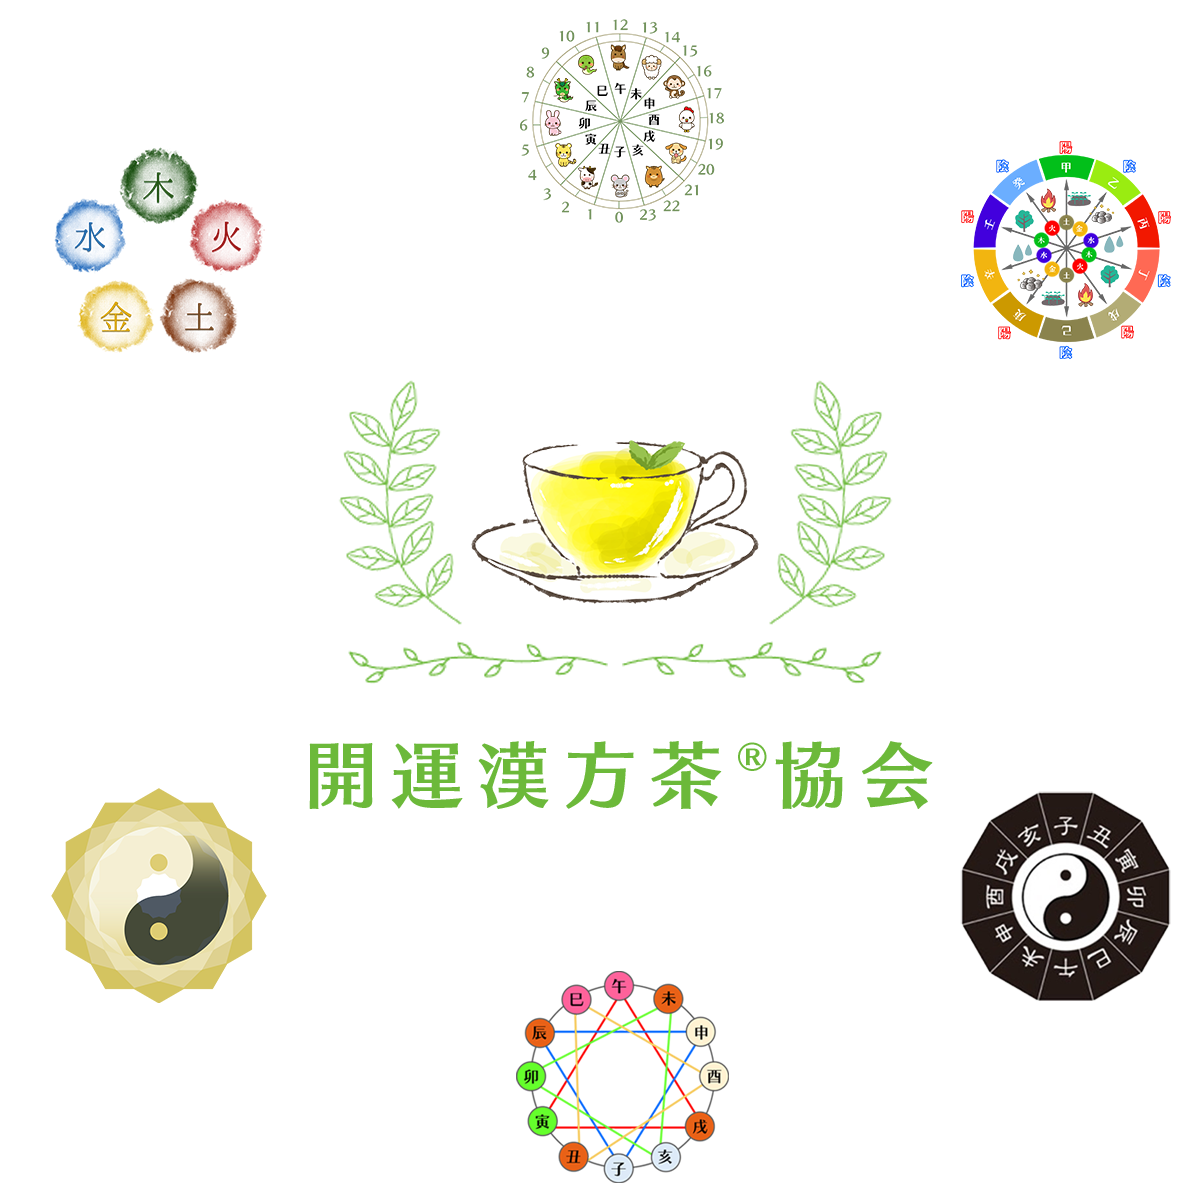 開運漢方茶®協会